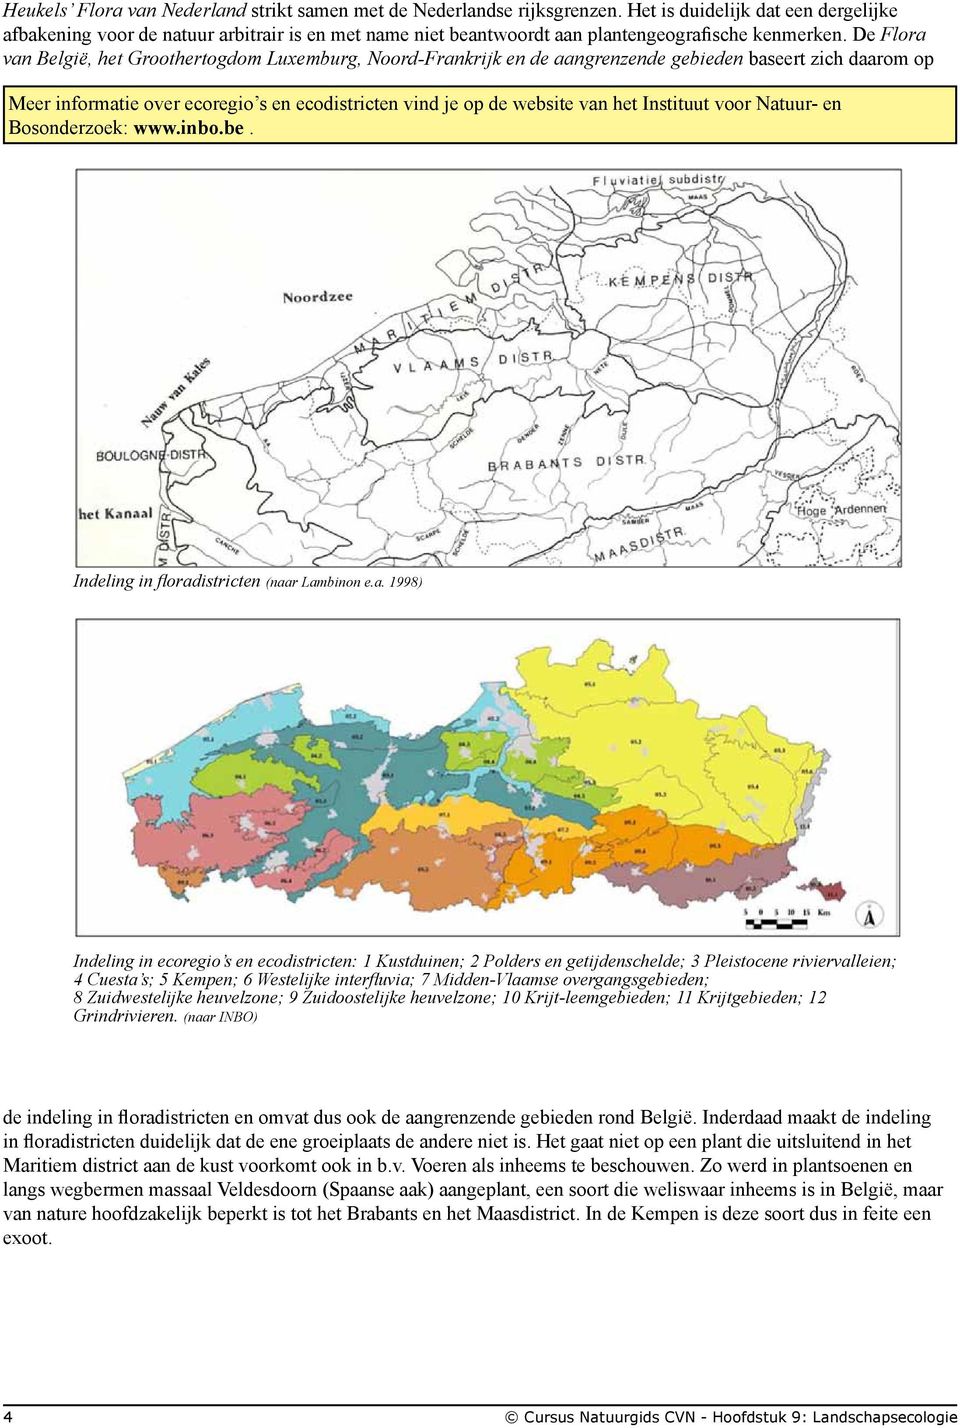 De Flora van België, het Groothertogdom Luxemburg, Noord-Frankrijk en de aangrenzende gebieden baseert zich daarom op Meer informatie over ecoregio s en ecodistricten vind je op de website van het